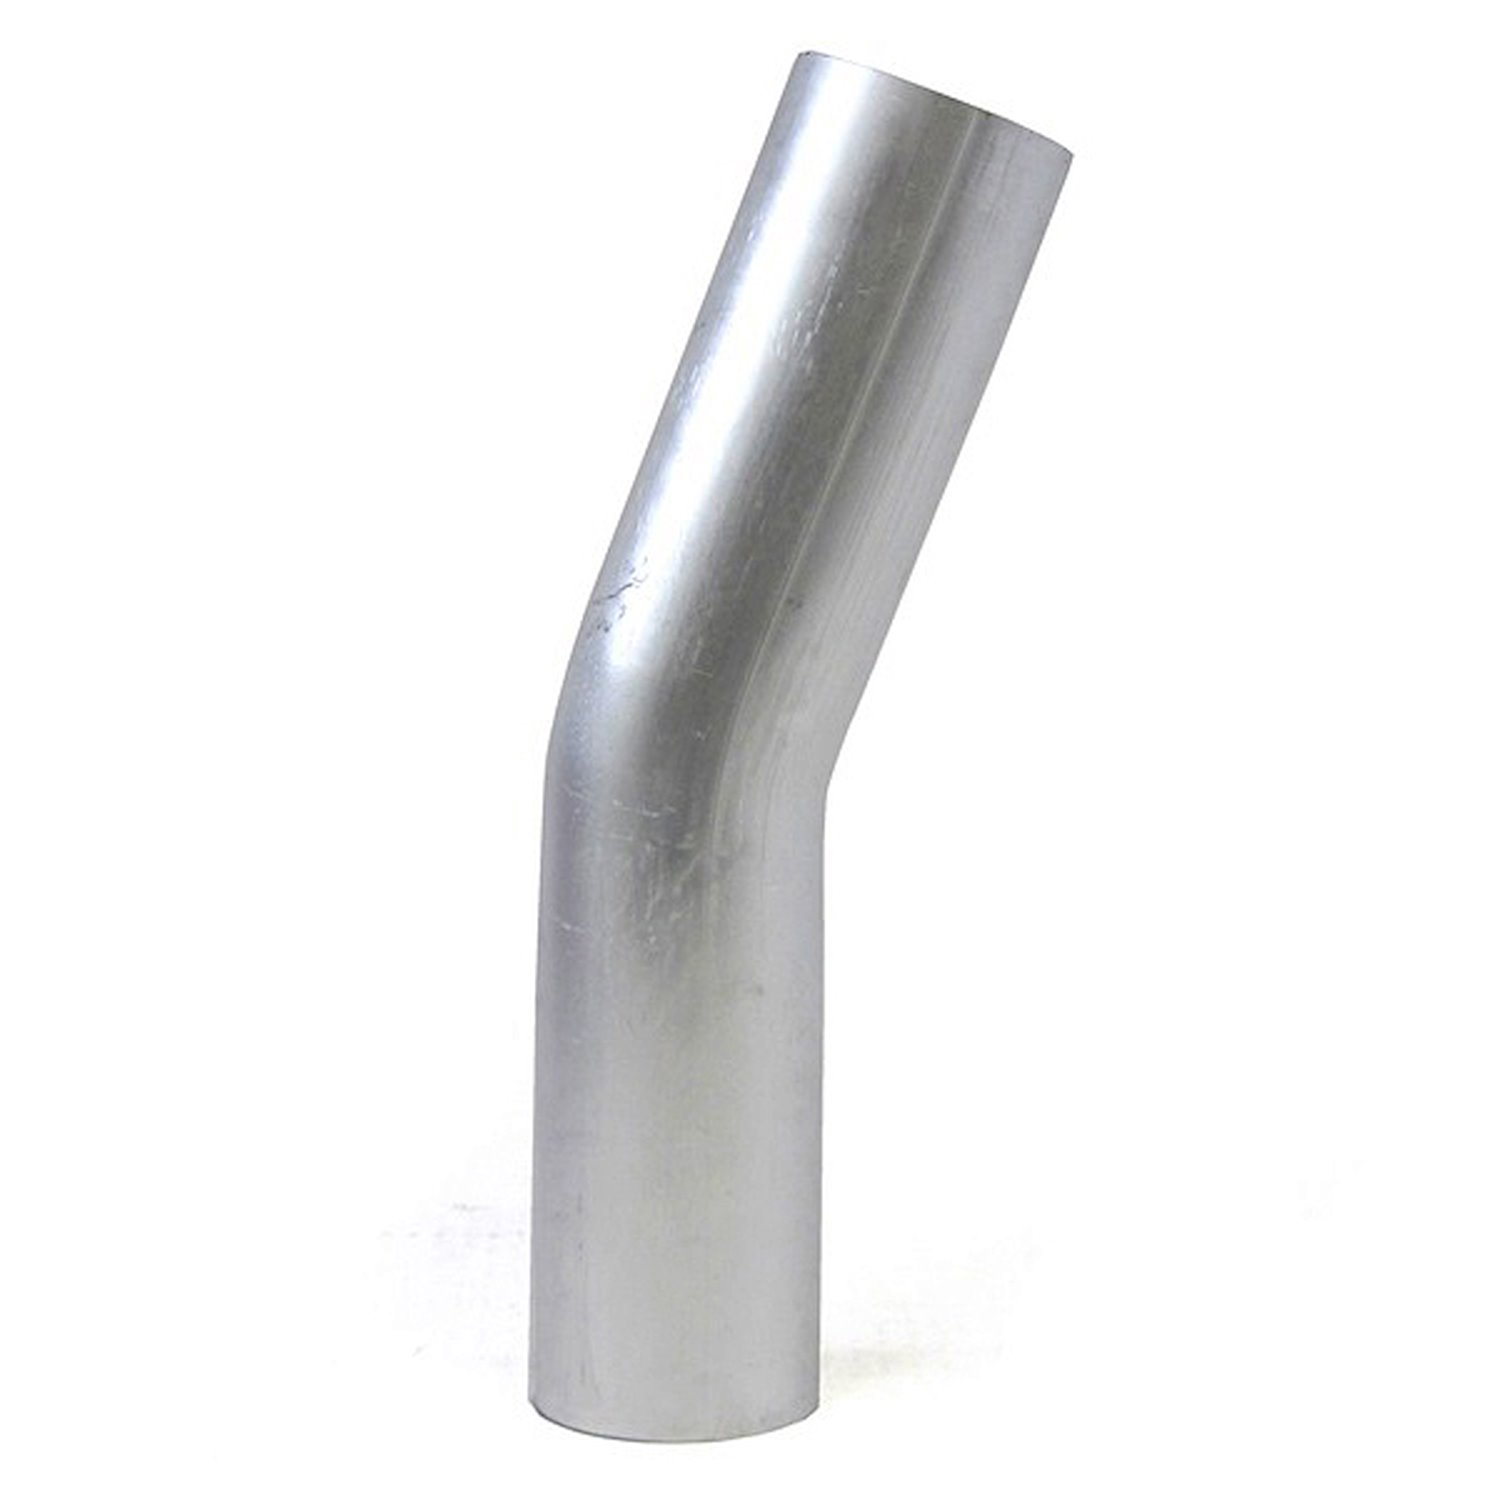 AT20-300-CLR-475 Aluminum Elbow Tube, 6061 Aluminum, 20-Degree Bend Elbow Tubing, 3 in. OD, Large Radius, 4-3/4 in. CLR